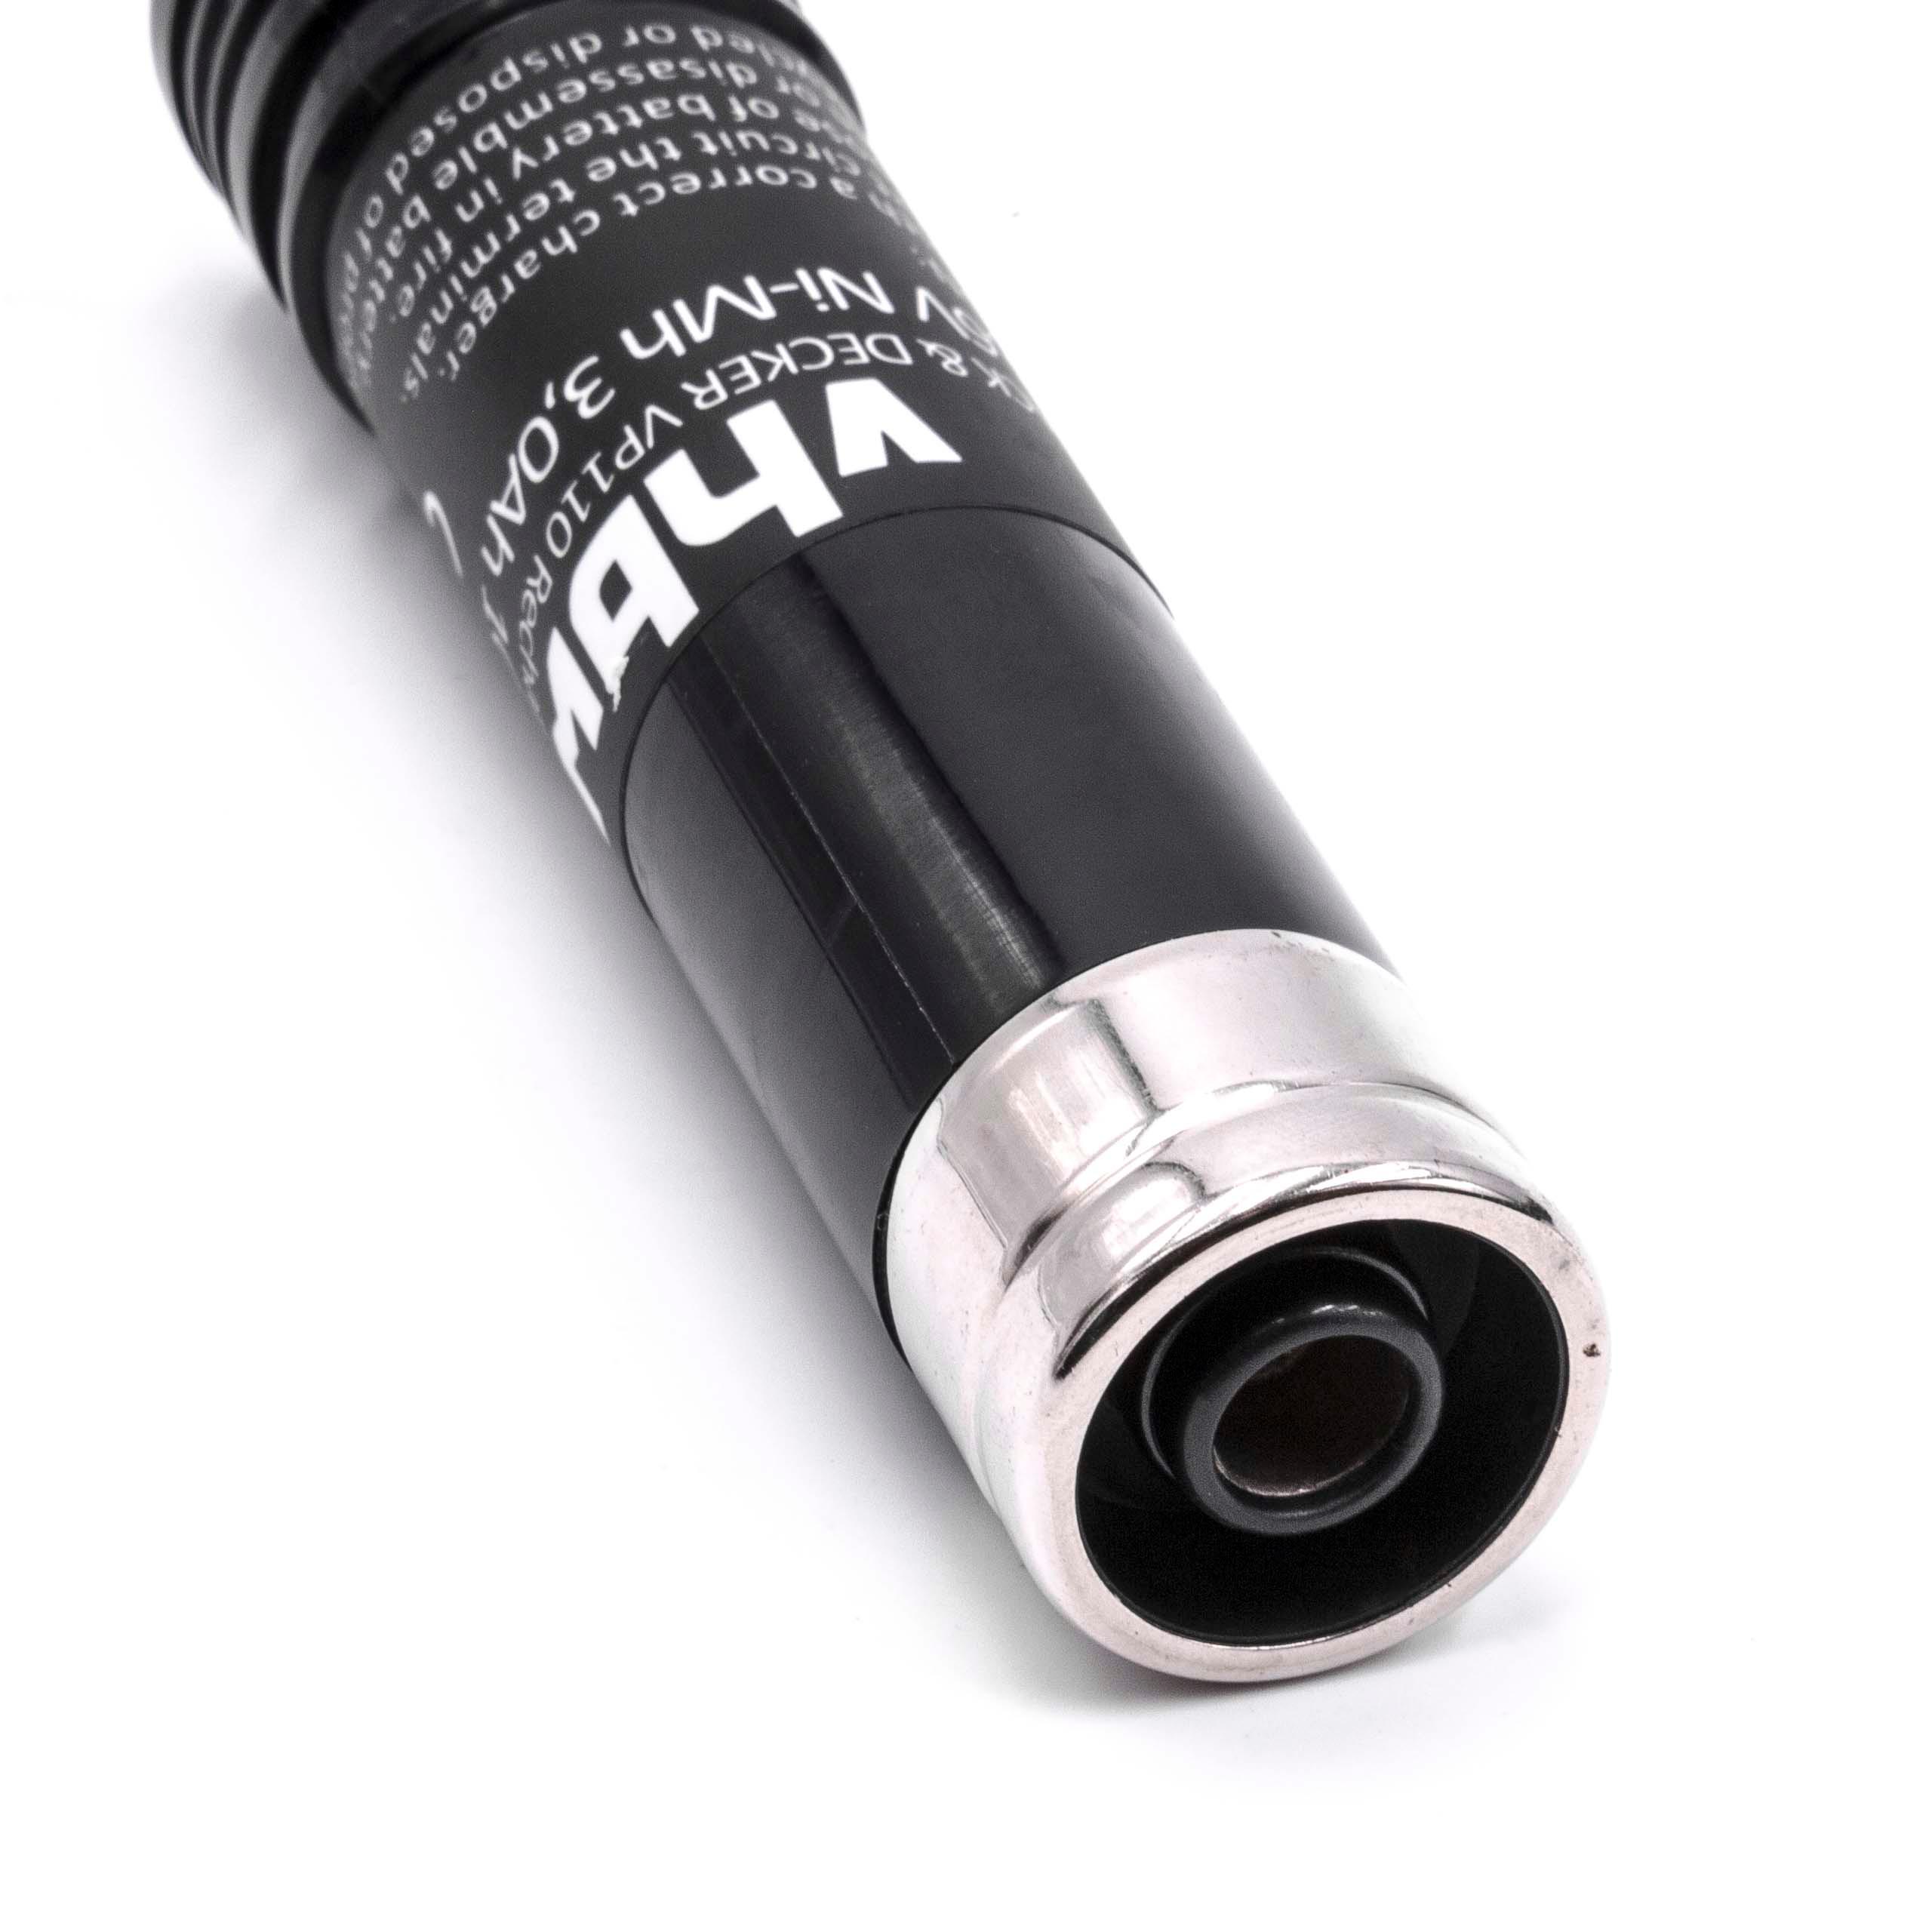 Batterie remplace Black & Decker 383900-004, 151995-02 pour outil électrique - 3000 mAh, 3,6 V, NiMH